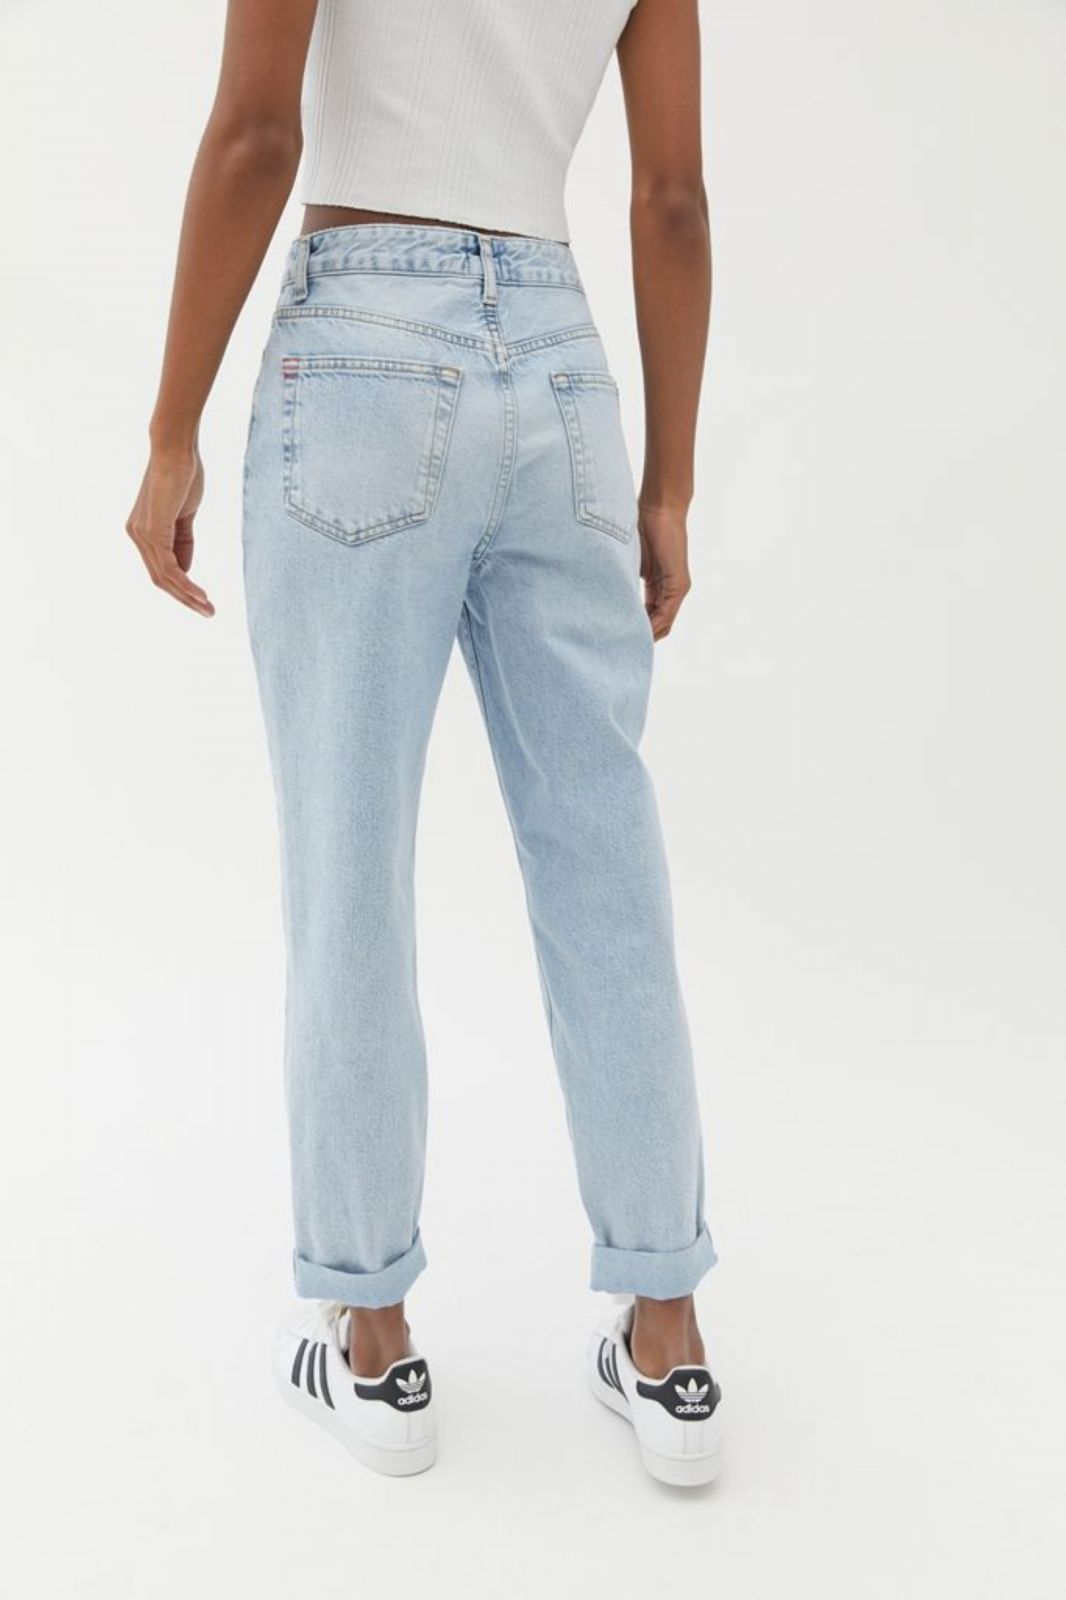  ג'ינס בגזרת Mom של URBAN OUTFITTERS